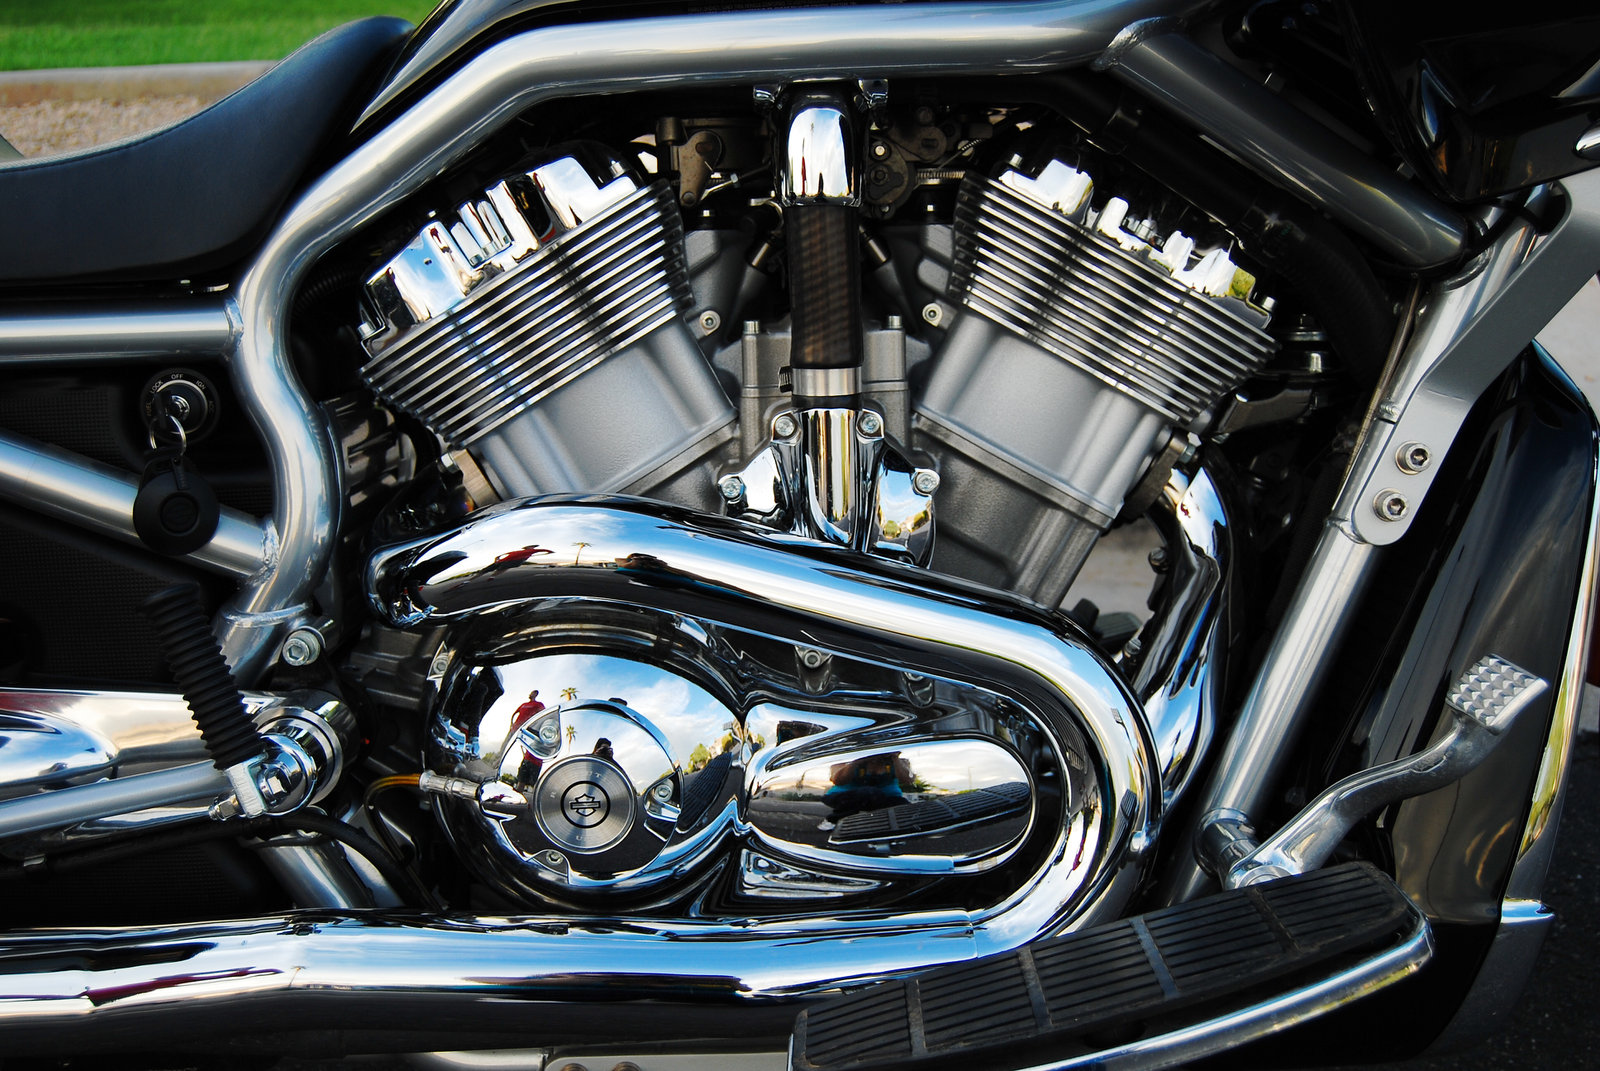 Harley Davidson V-Rod Bagger - TM VRSC 03 by Cam - Mbike.com